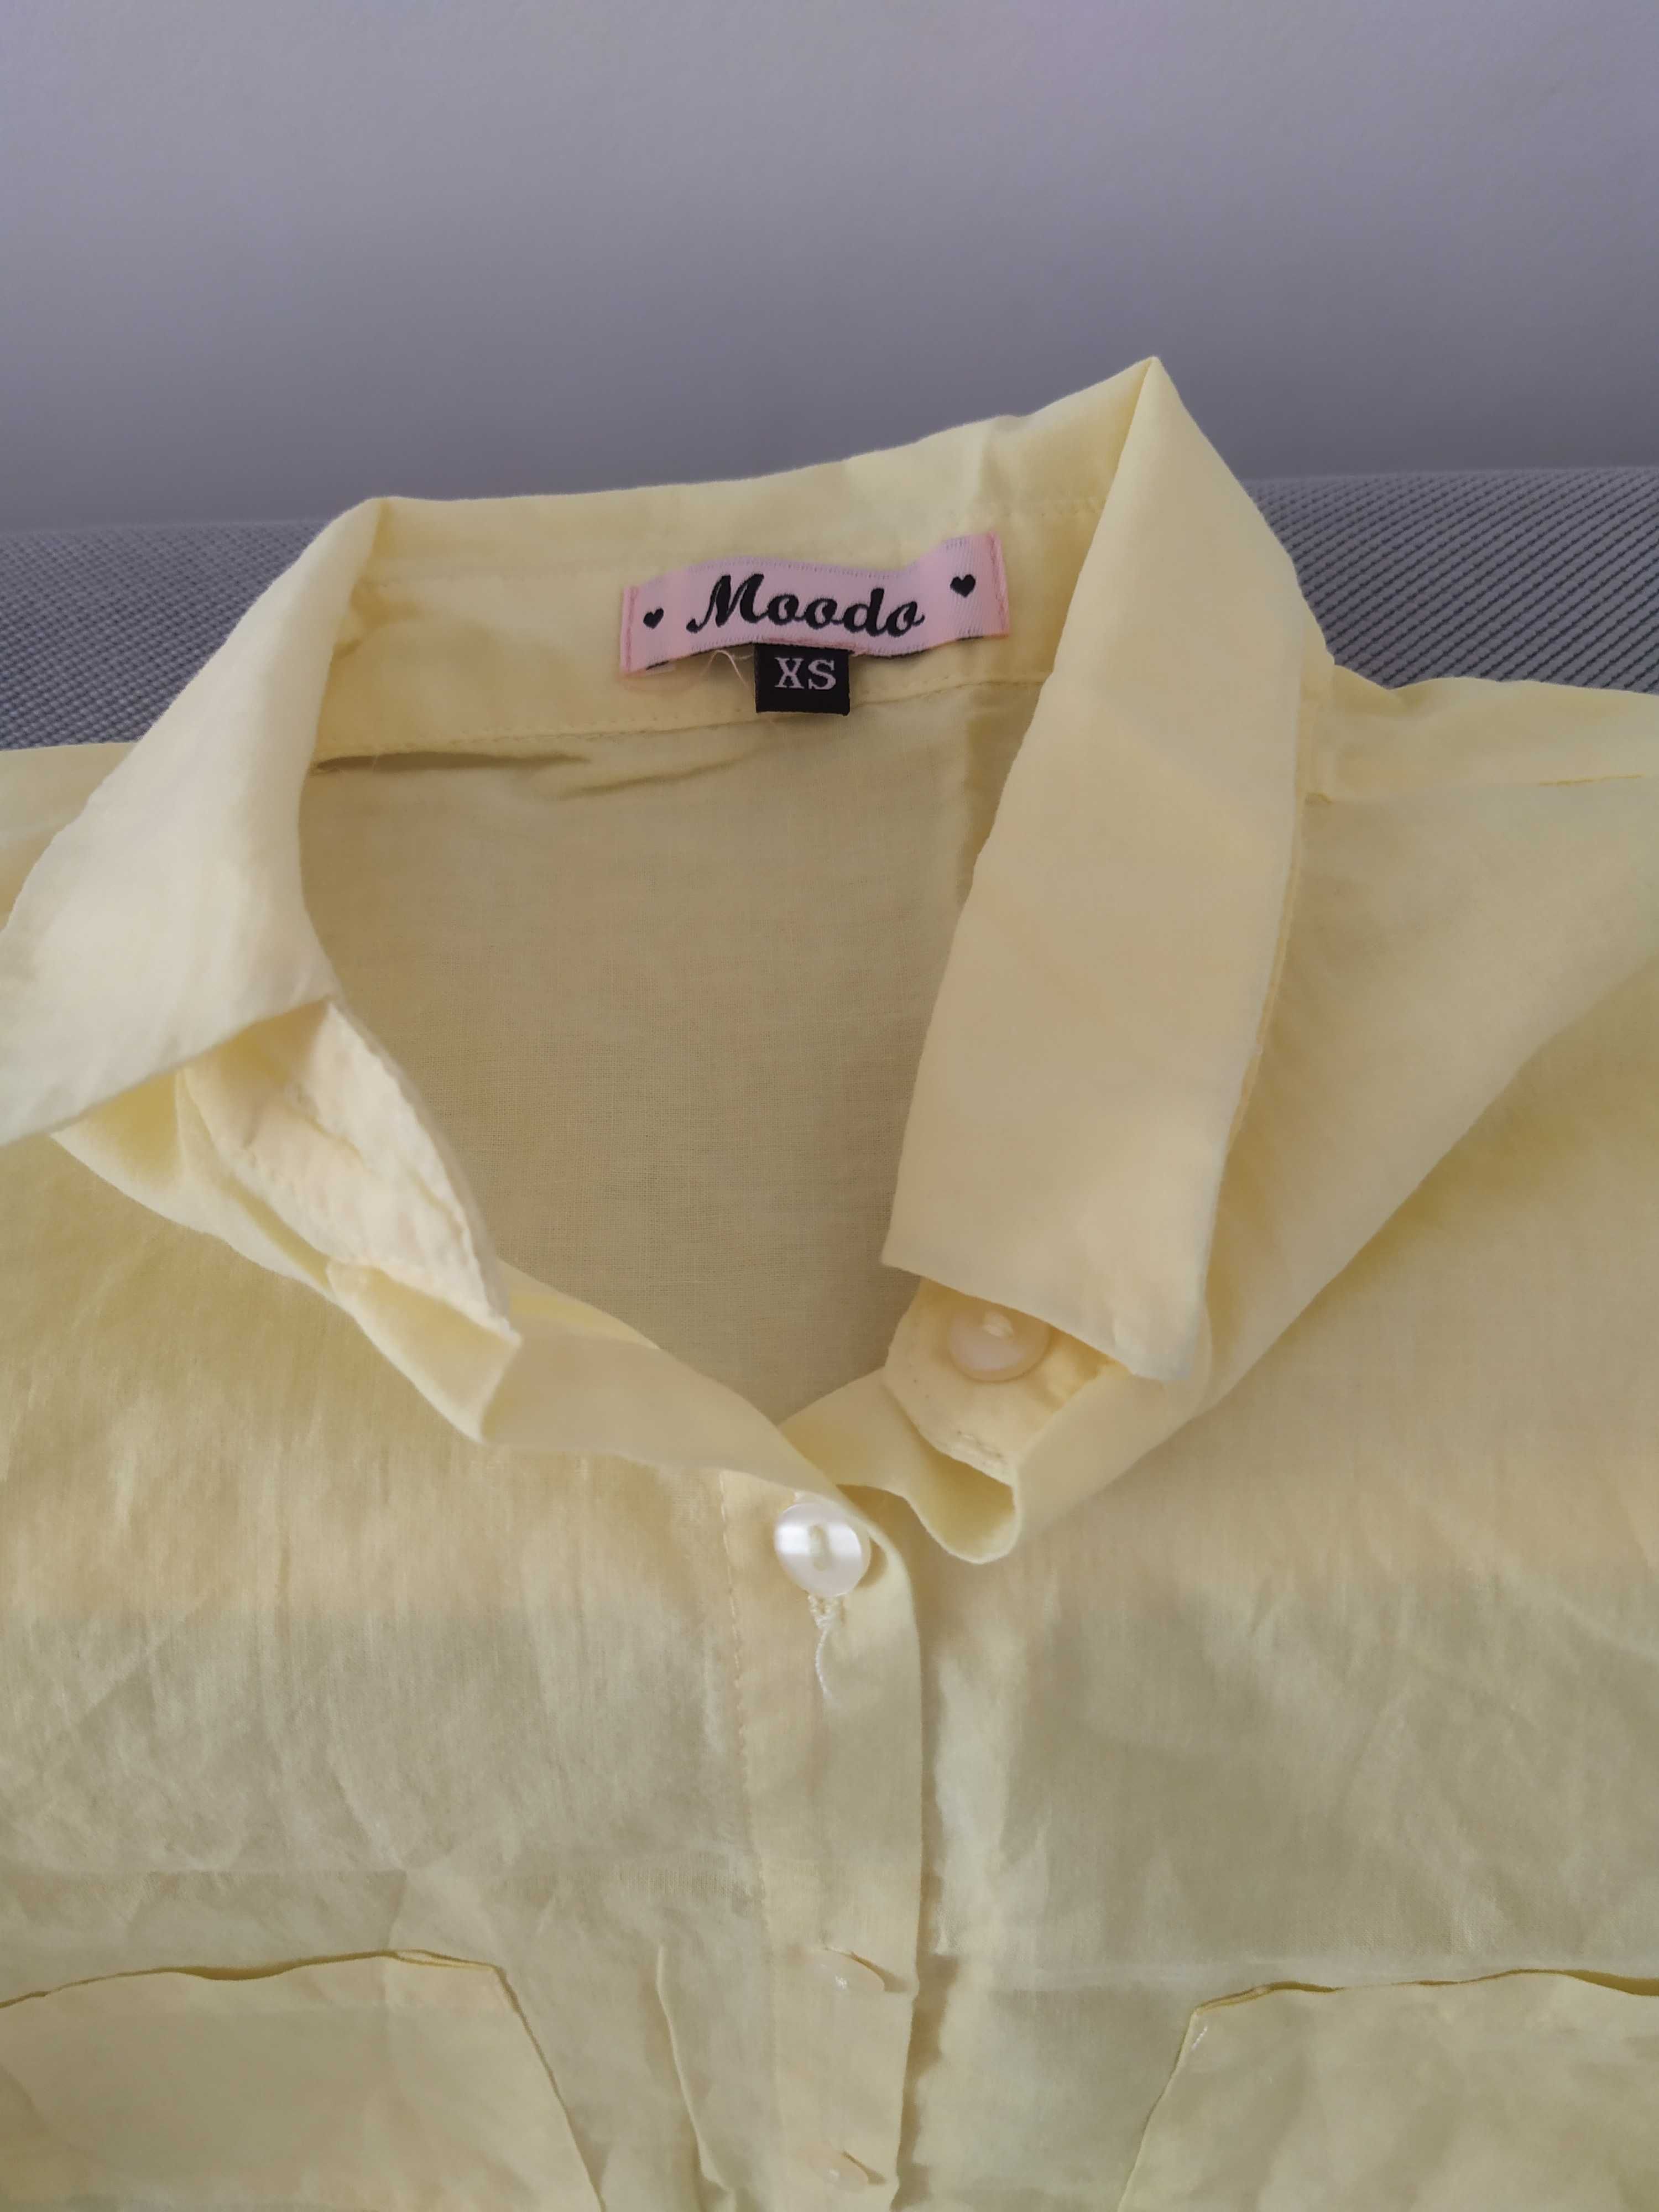 Koszula damska żółta rozmiar 34 XS firmy Moodo